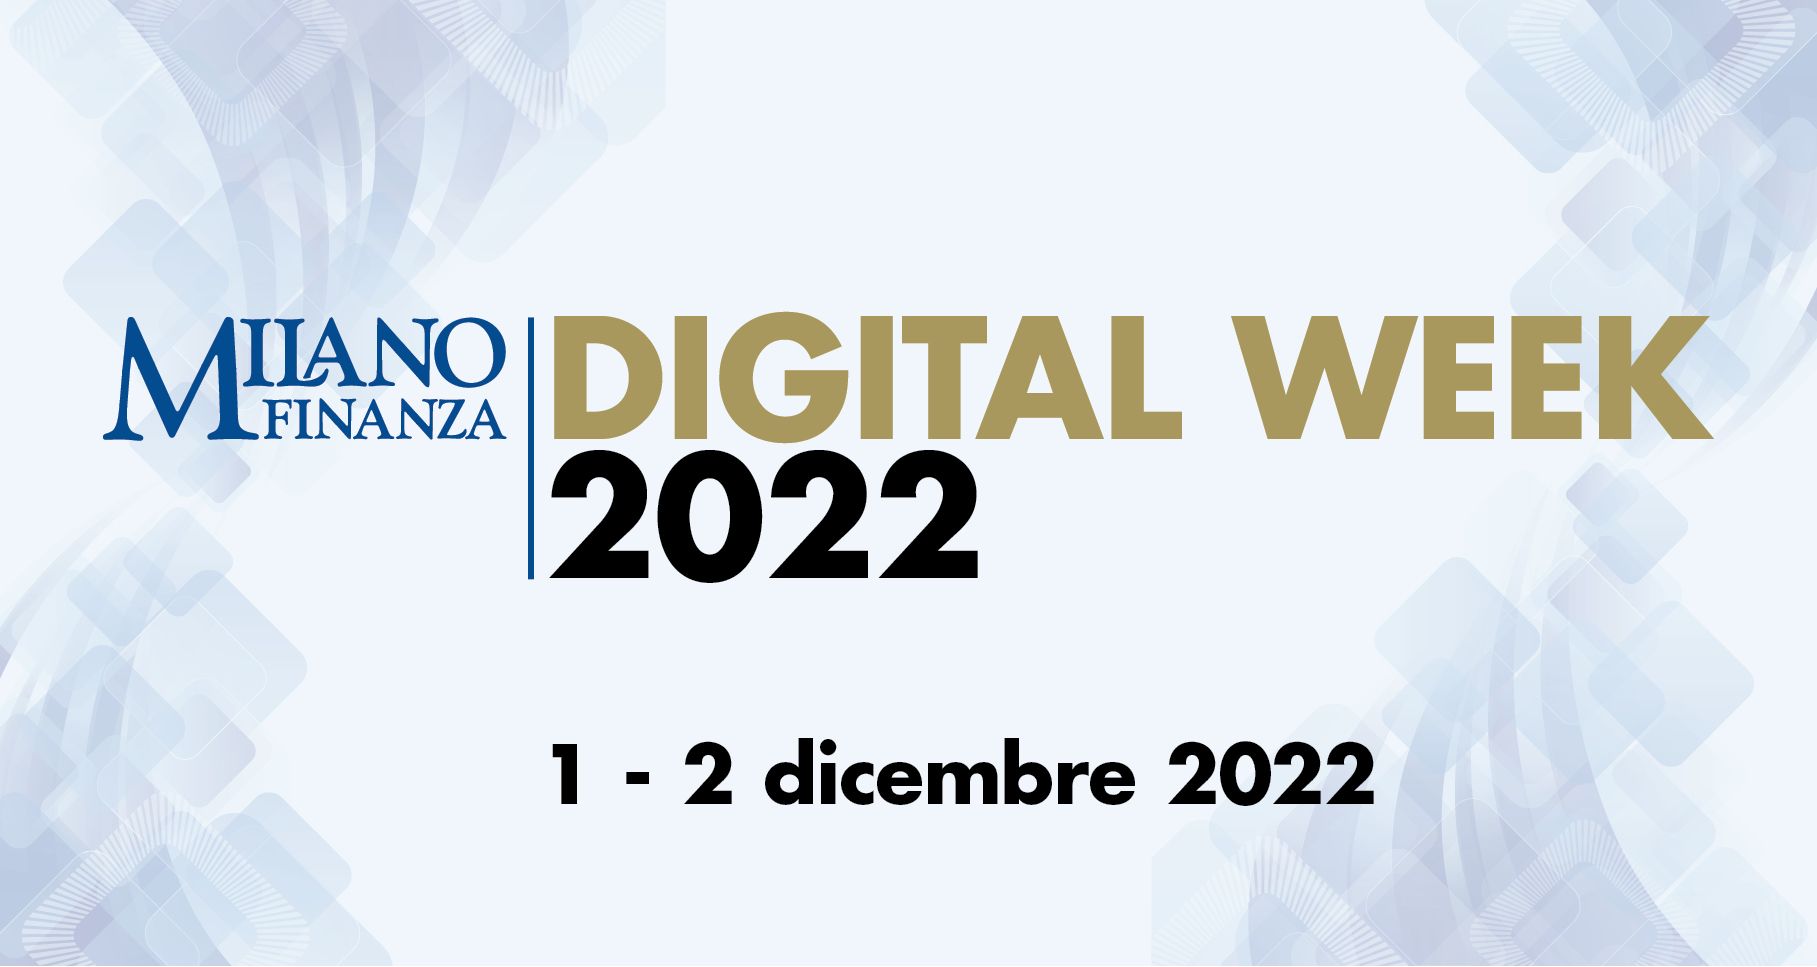 Milano Finanza Digital Week